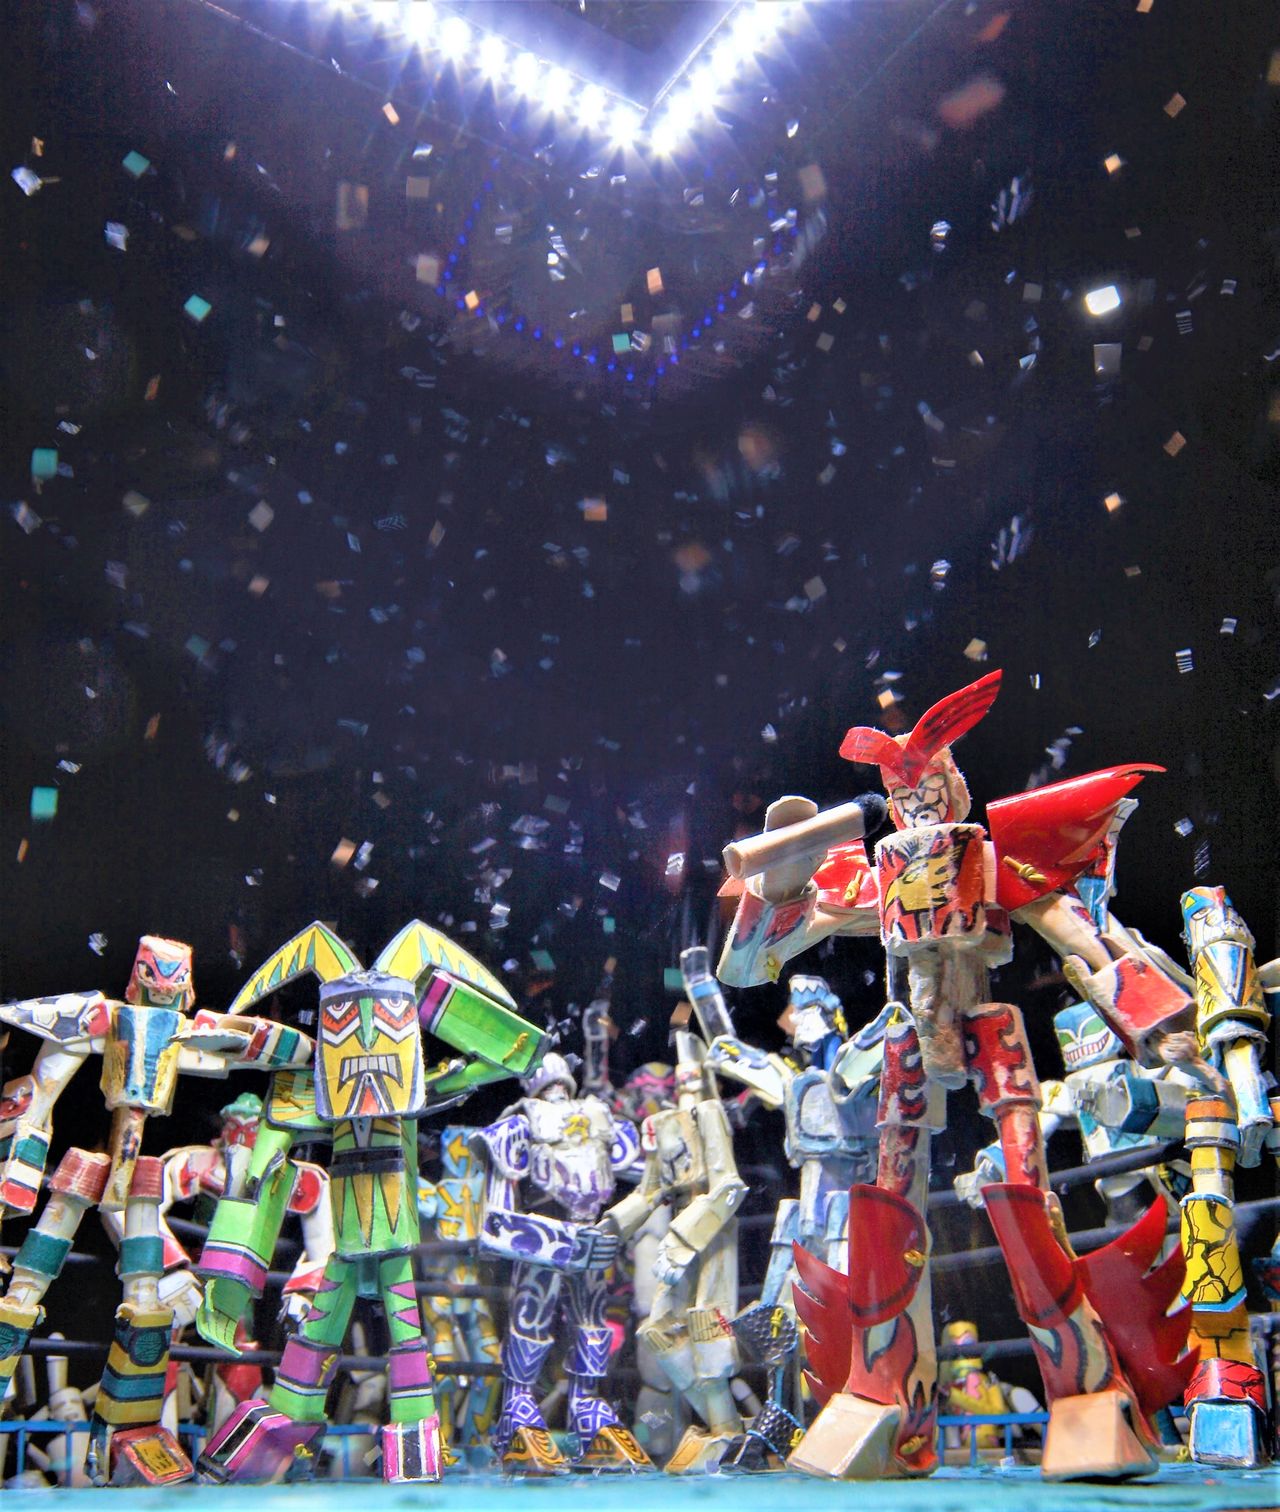 Les robots papier, acteurs principaux du monde imaginaire de l’artiste (© Yasui Tomohiro)